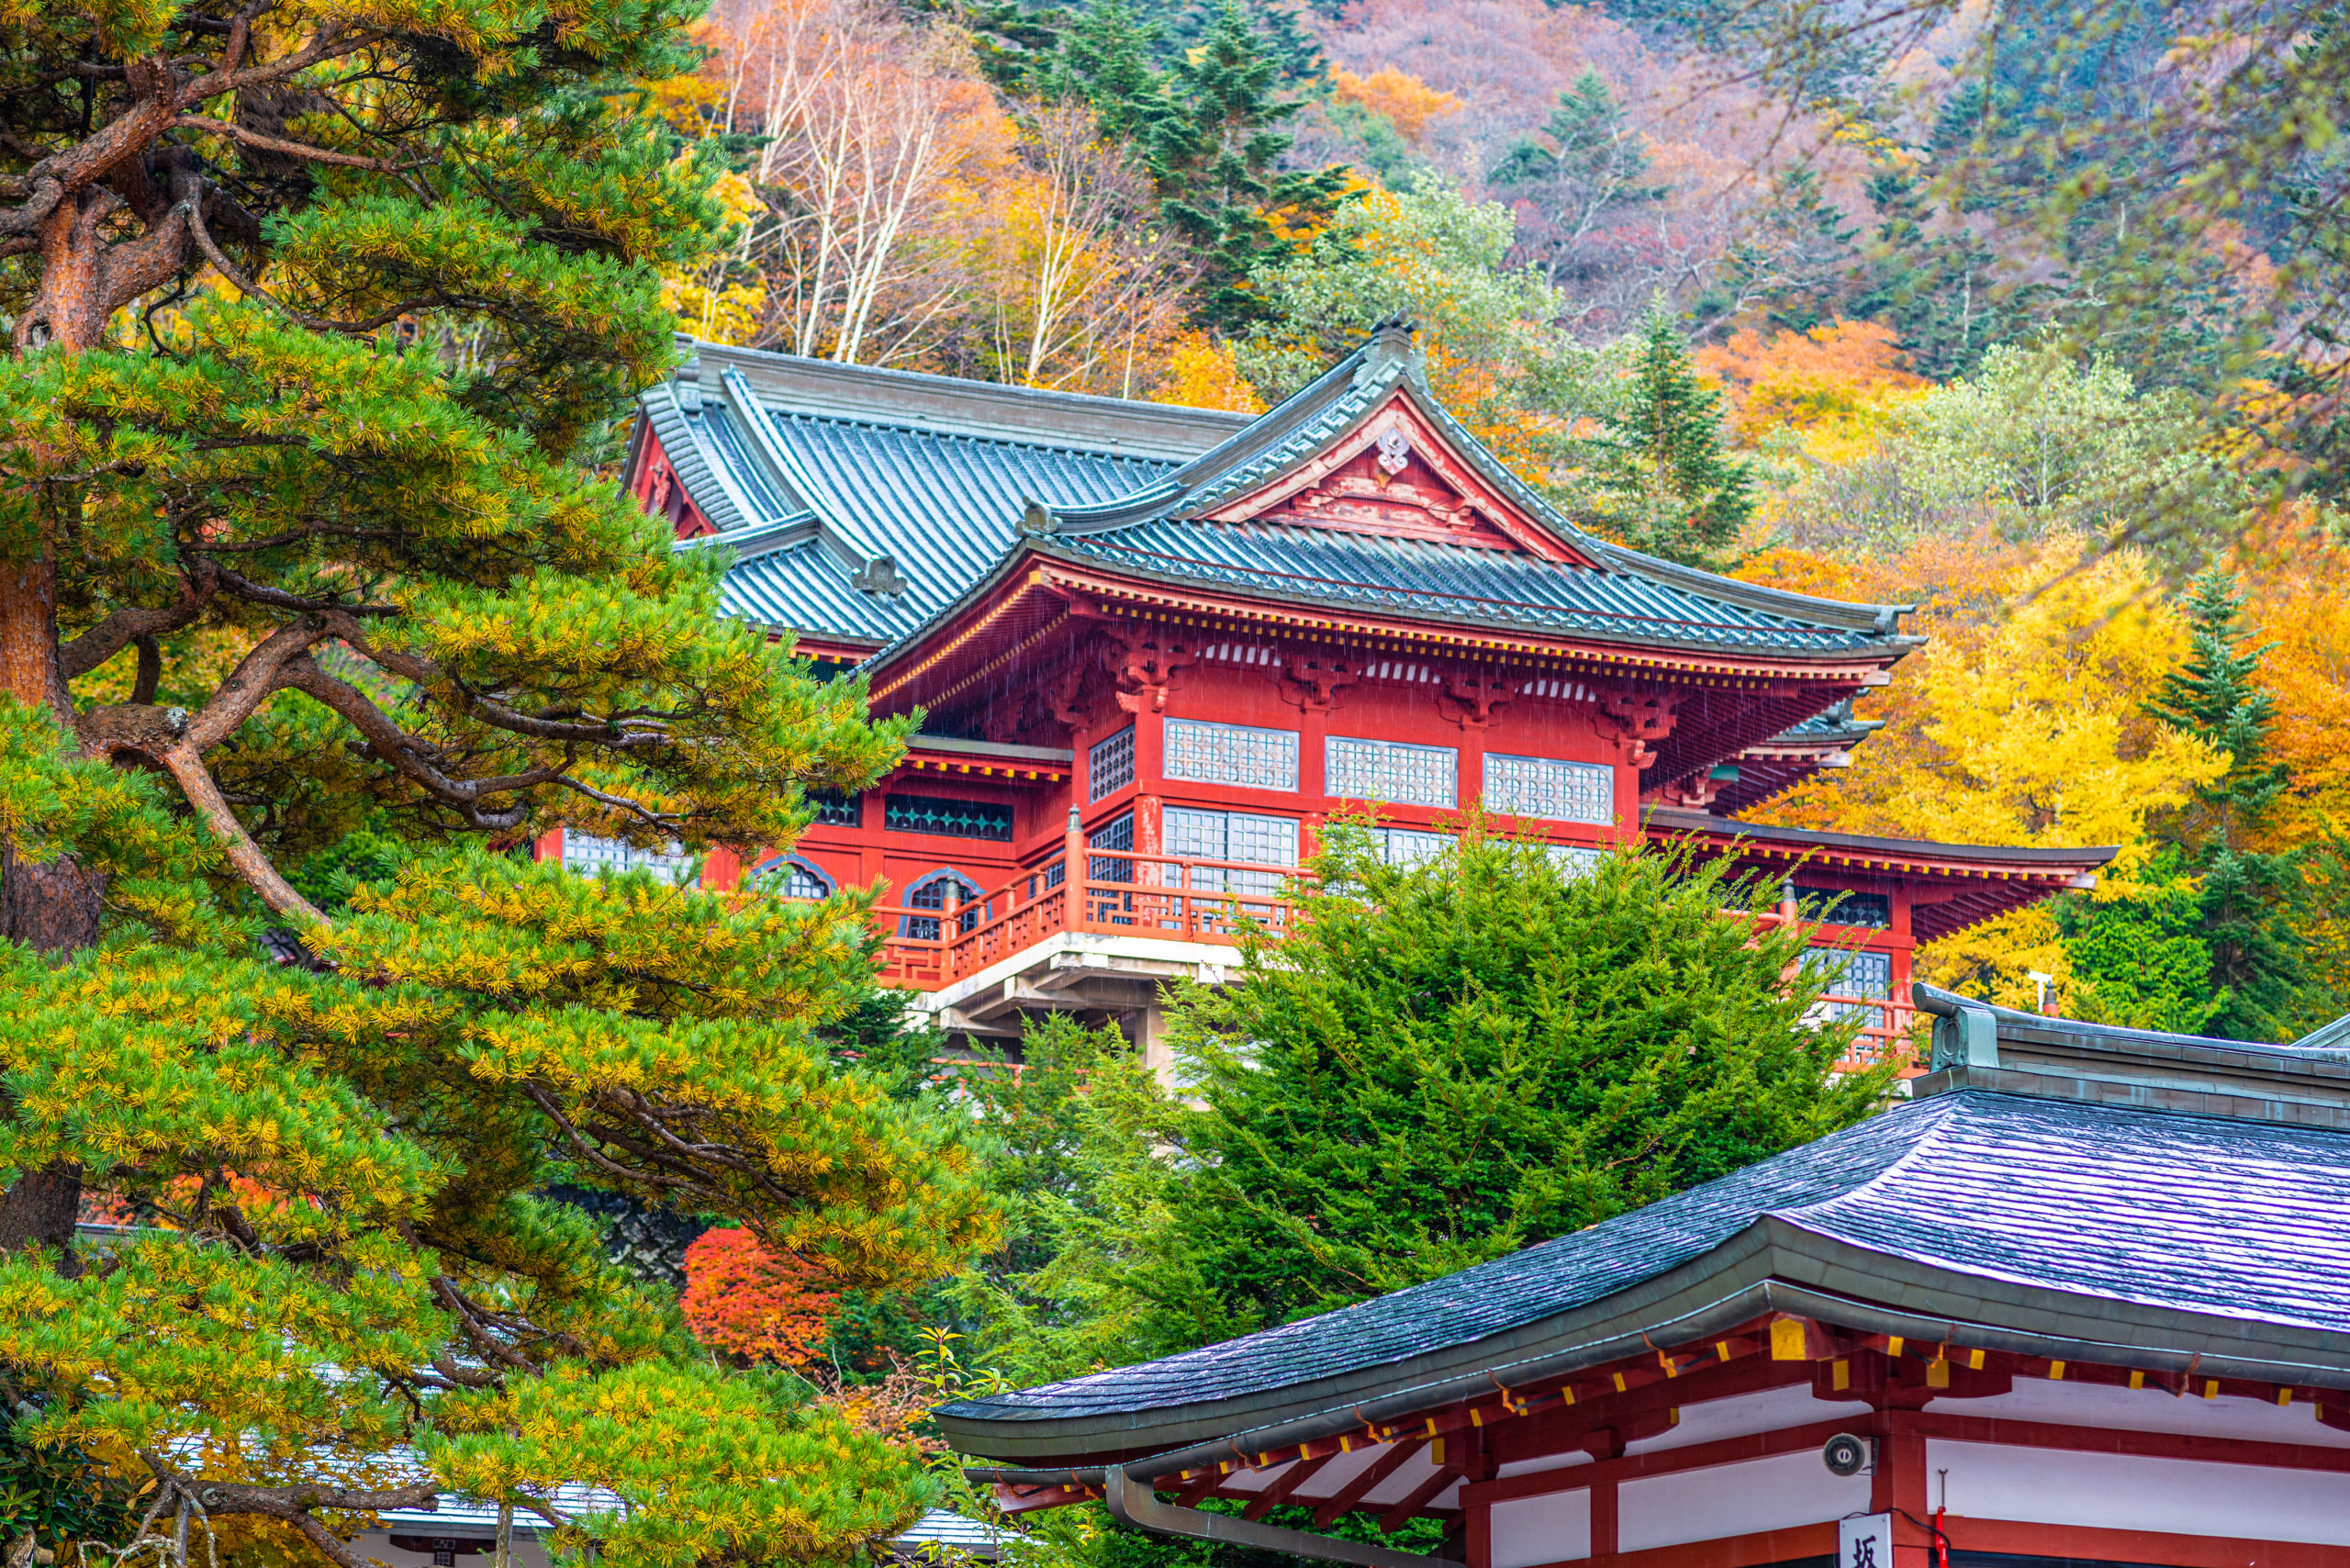 Chuzen-ji Temple in Nikko, Tochigi, Japan during autumn season.